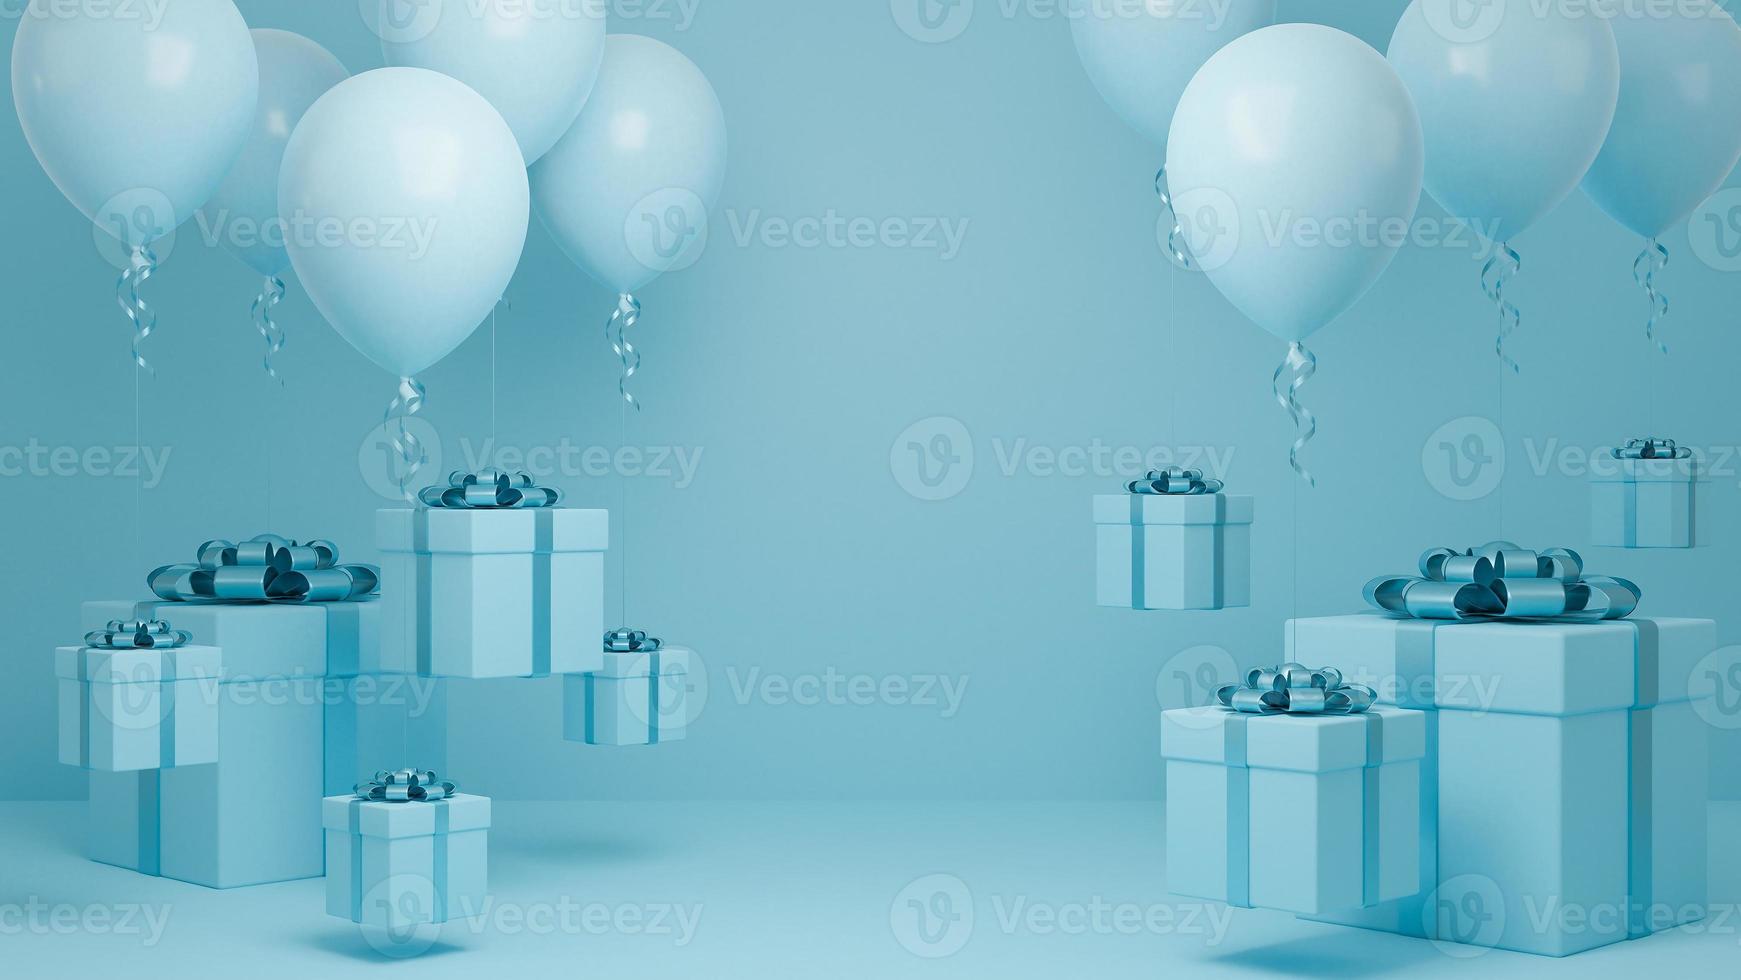 muitas caixas de presente voam no ar com balão e fundo pastel de fita azul., natal e feliz ano novo conceito de fundo., modelo 3d e ilustração. foto